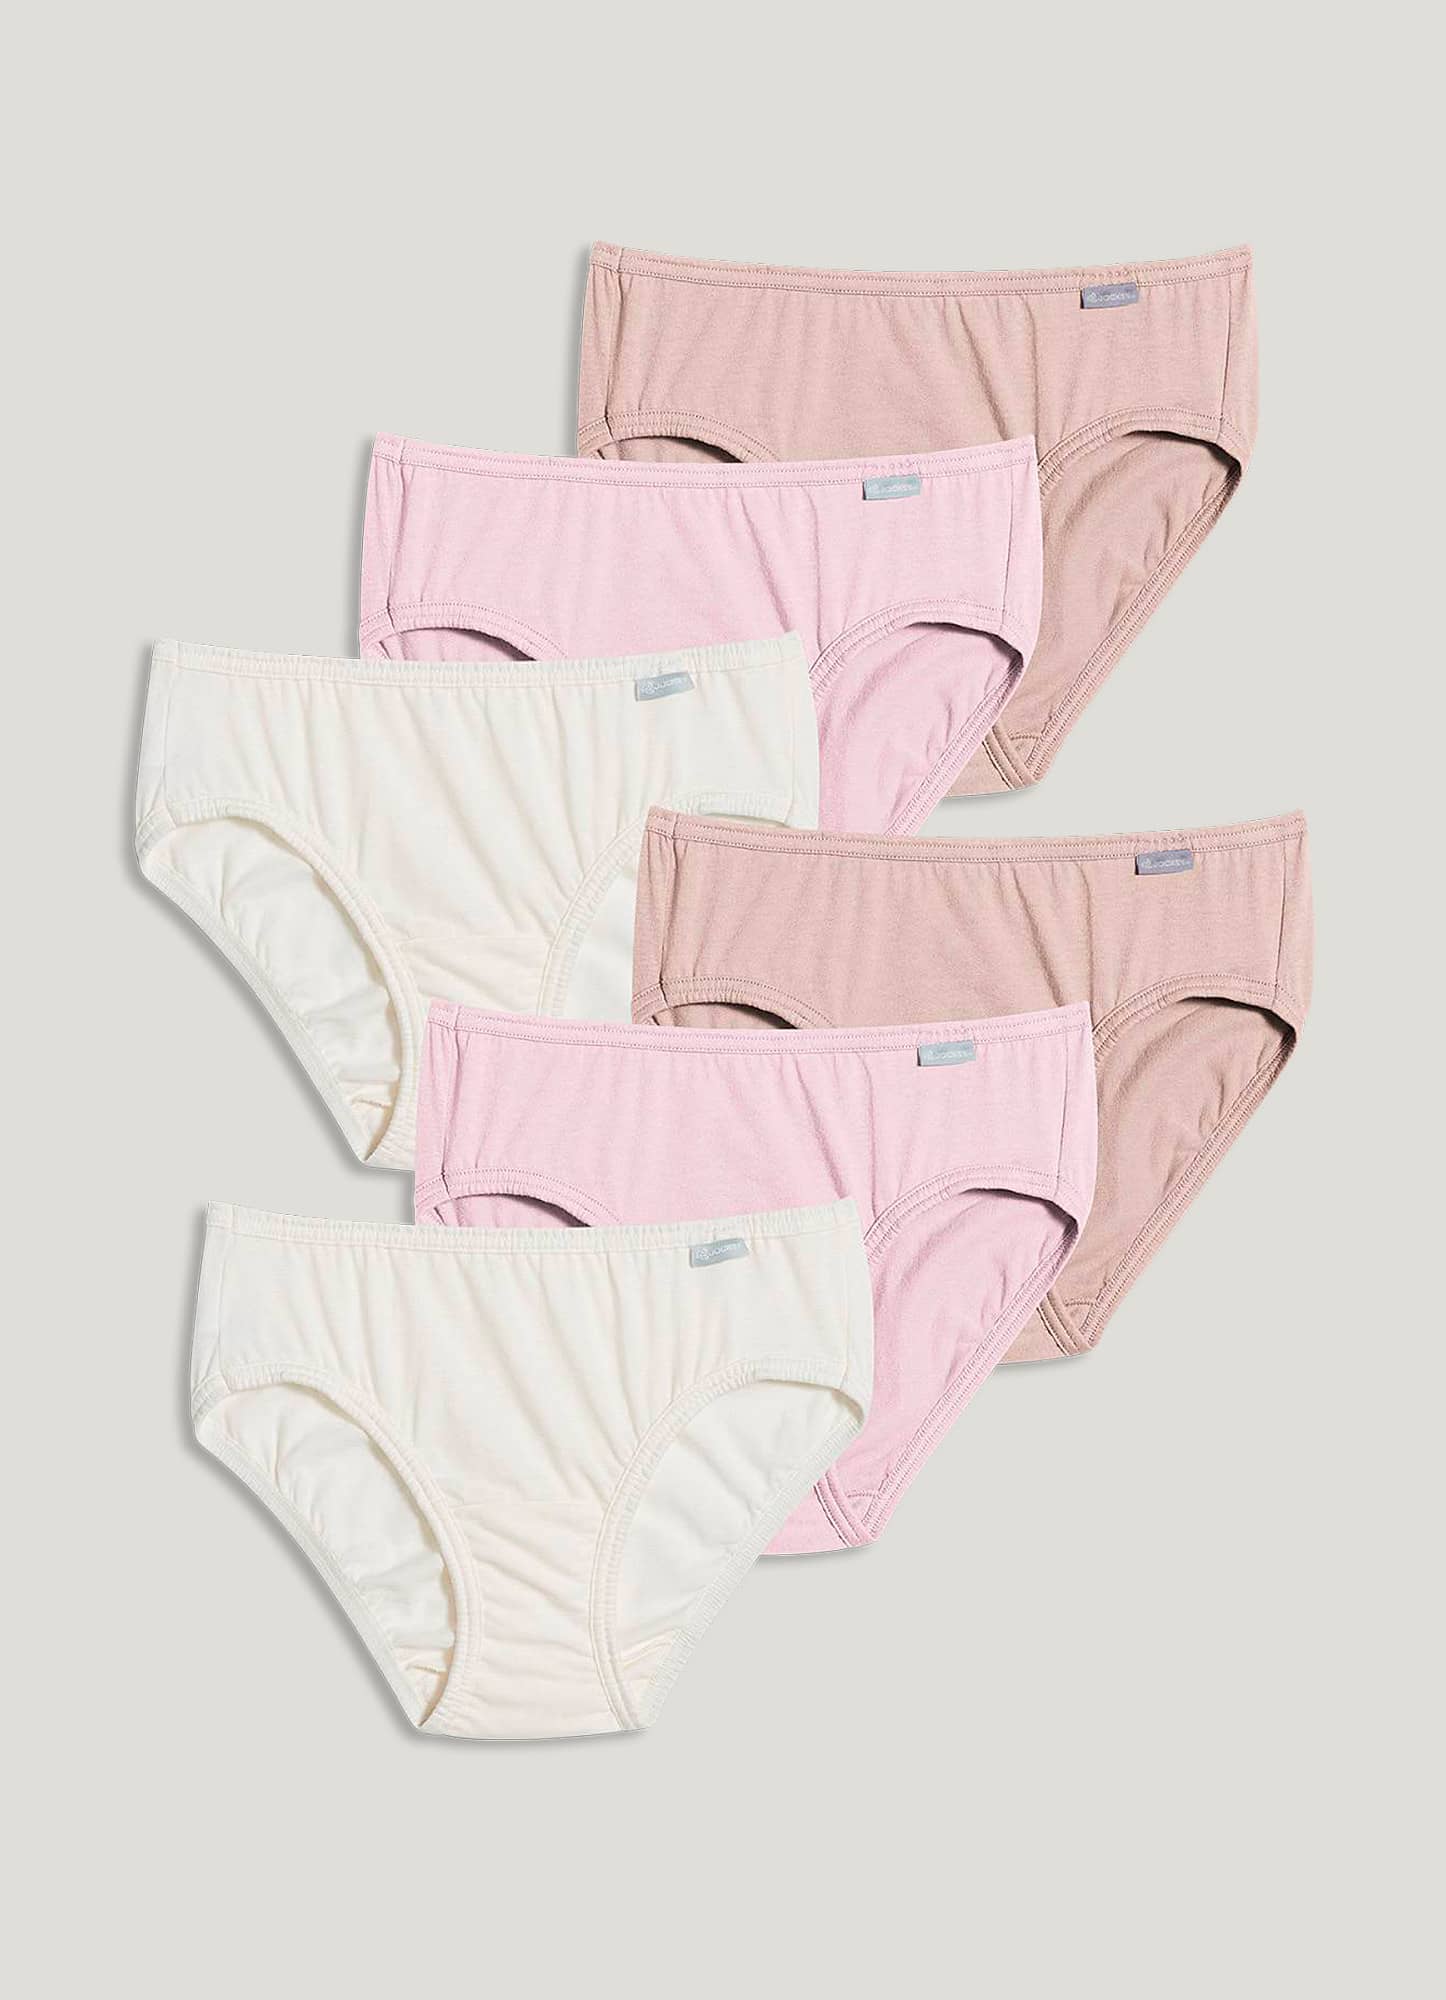 Jockey Ladies 2 Pack Comfort Classics Bikini Underwear size 12 Stripes Ivory